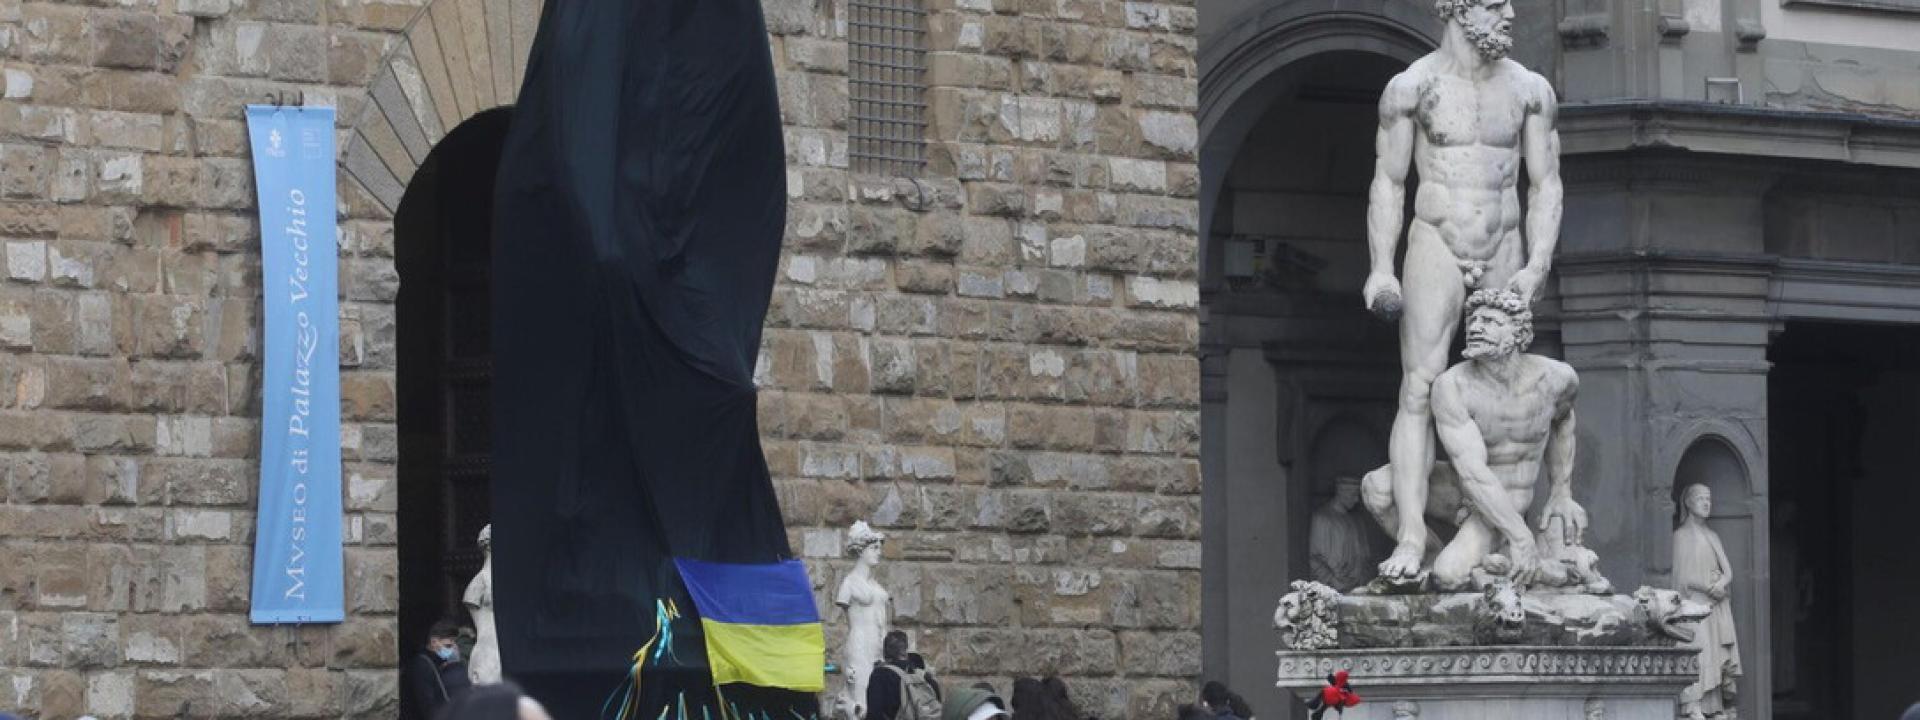 Brucia la copia del David a Firenze per solidarietà con l'Ucraina: danni per 15mila euro